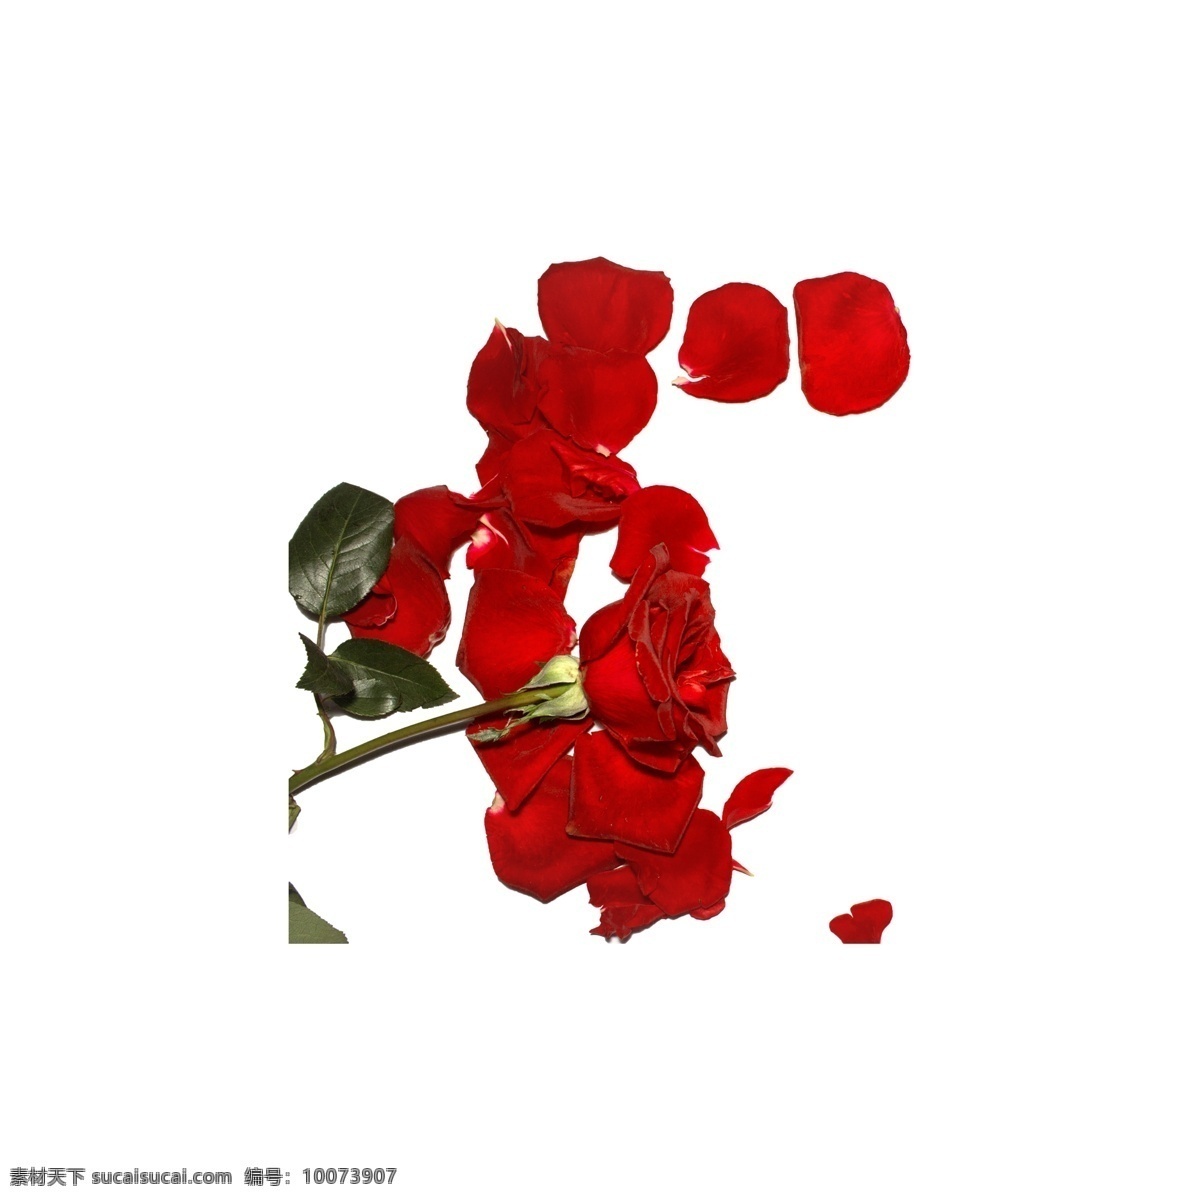 玫瑰 花瓣 免 抠 红色 红玫瑰 玫瑰花瓣 植物 爱情 情人节 红玫瑰免抠 实物 拍摄 鲜花 花卉